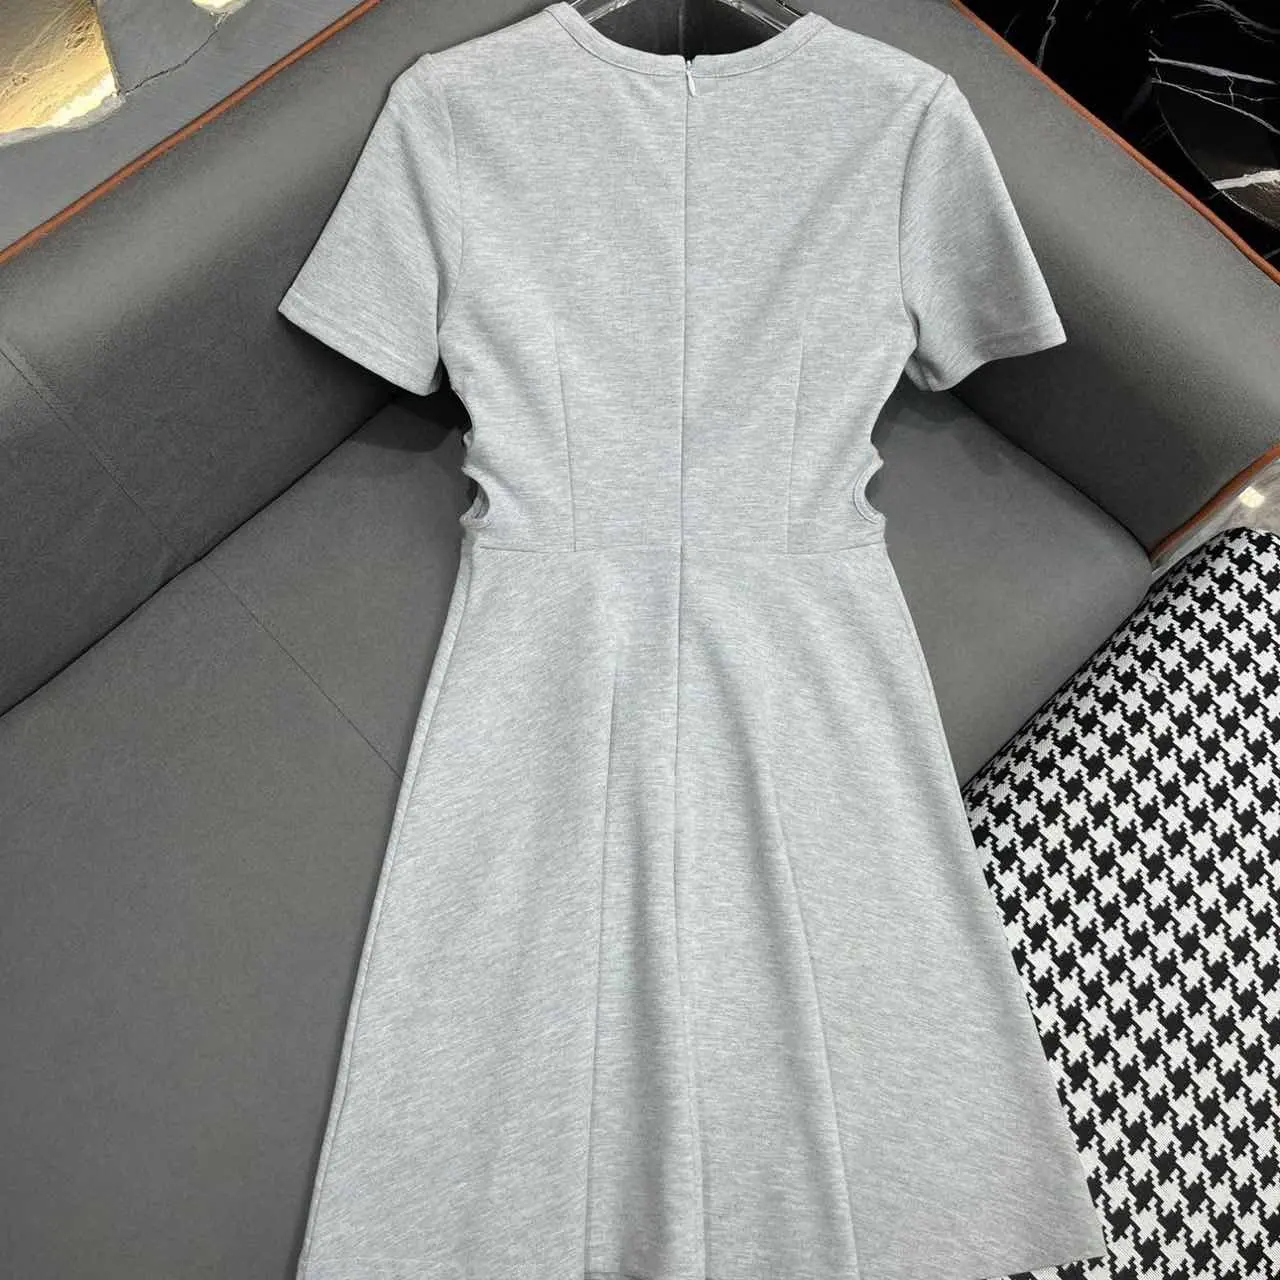 Candice vestidos de grife estampados de renda de luxo para mulheres moda casual 2014